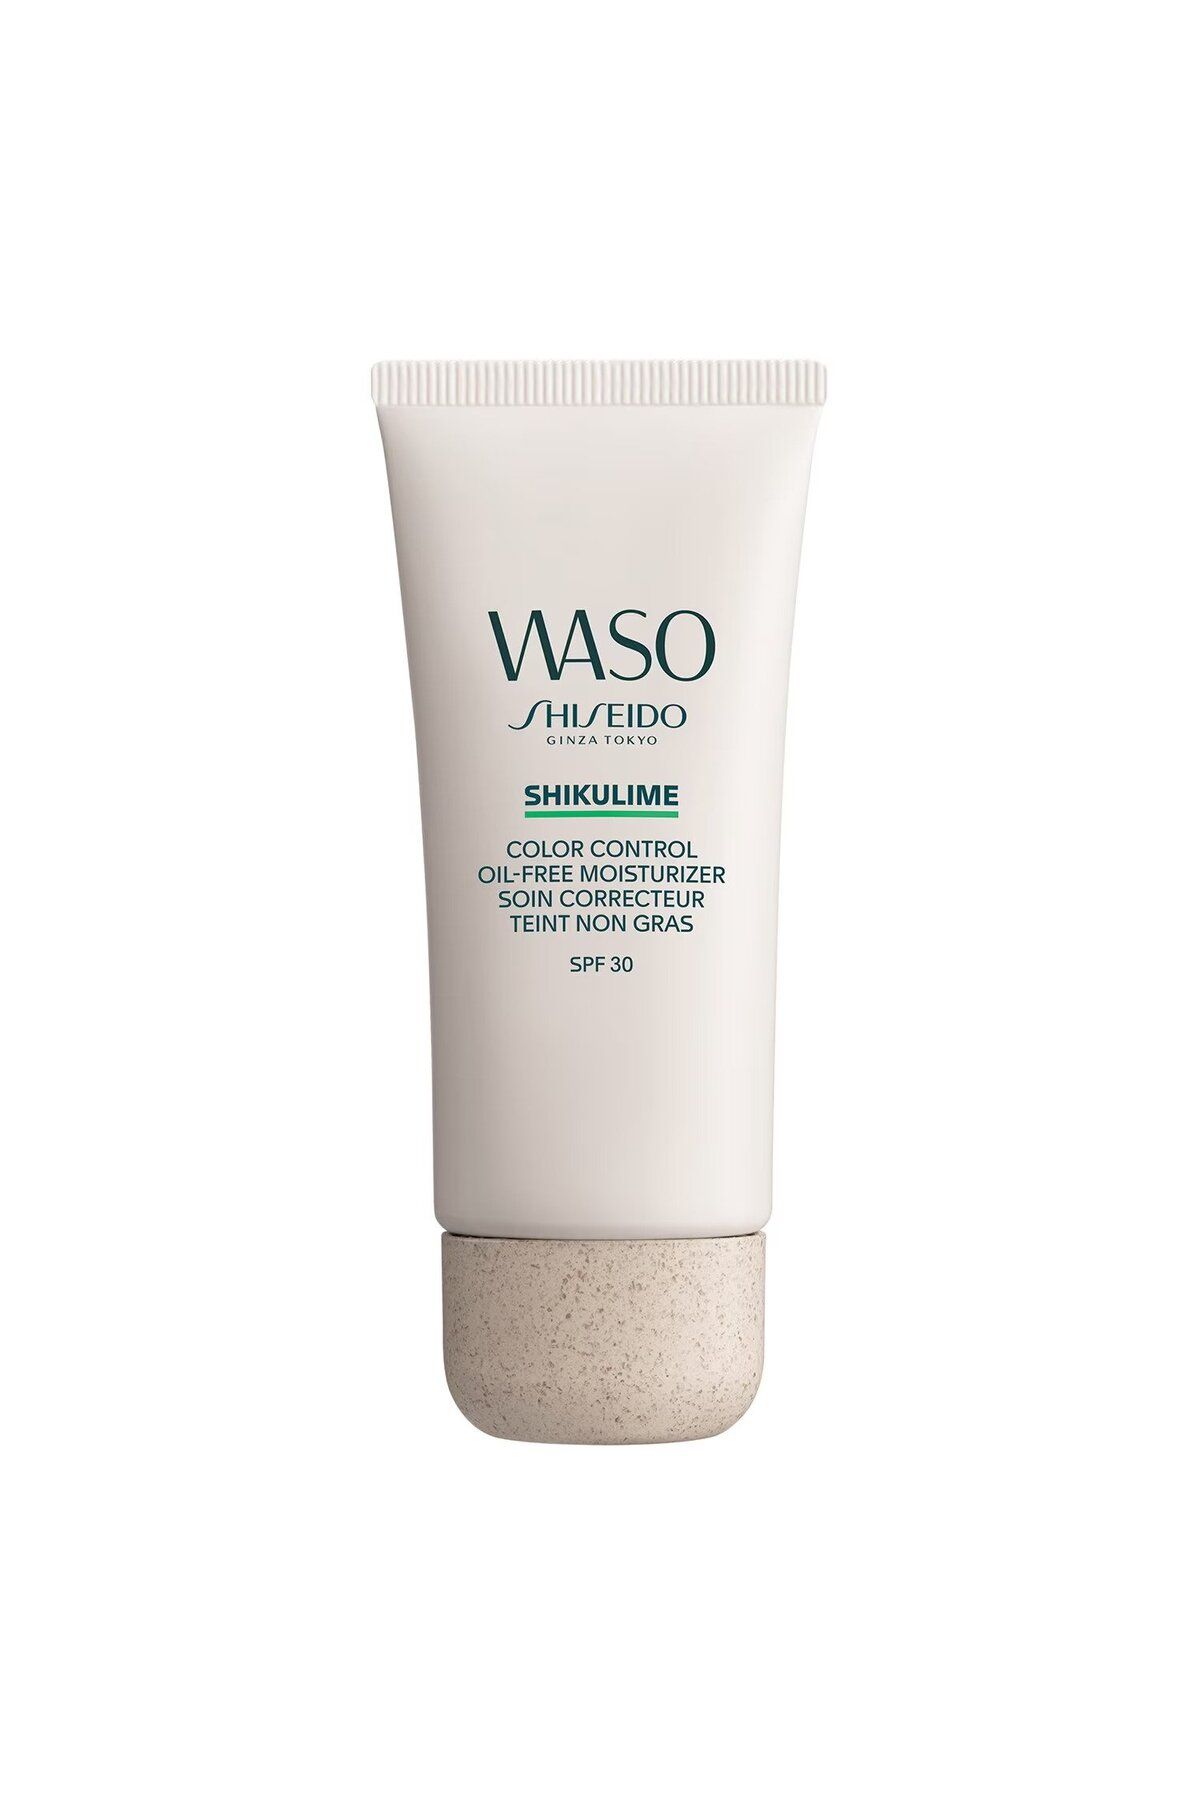 Shiseido WASO - SPF 30 Her Cilt Tonuna Uyan Kusurları Kapatan Yağsız Ve Renkli Nemlendirici Yüz Kremi 50 ml